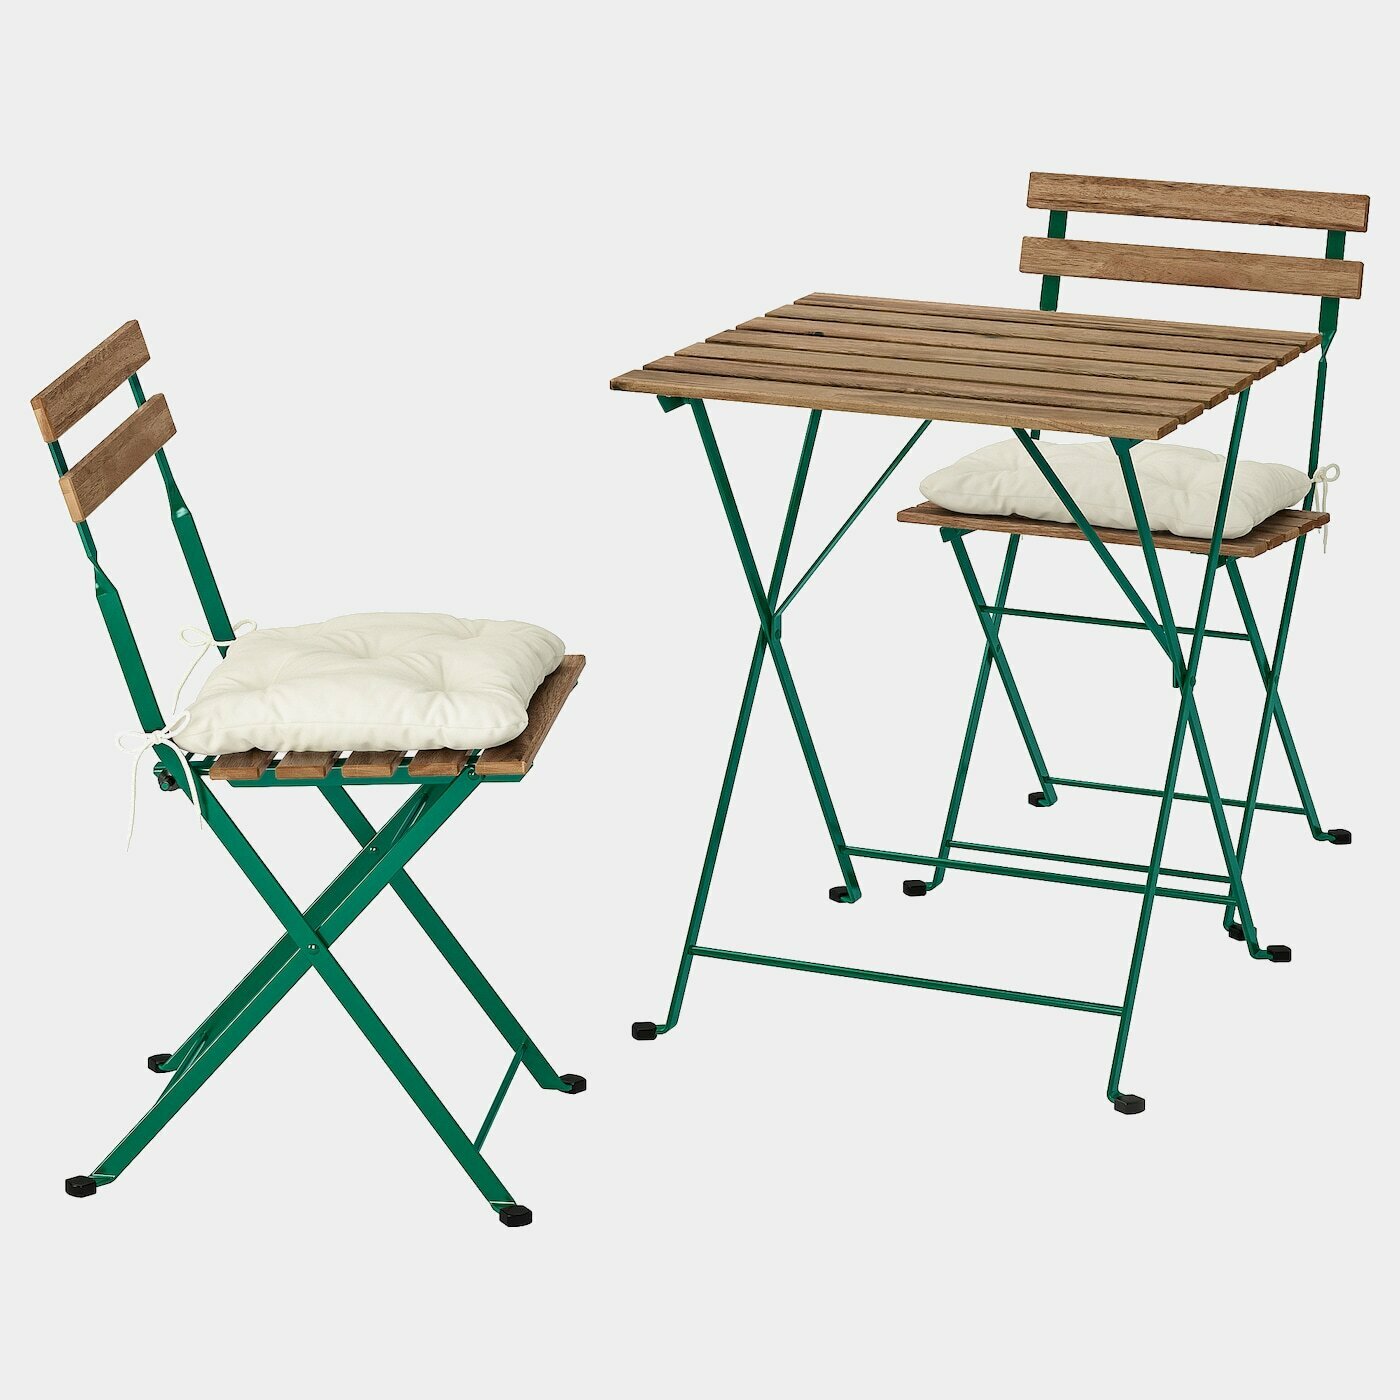 TÄRNÖ Tisch+2 Stühle/außen  -  - Möbel Ideen für dein Zuhause von Home Trends. Möbel Trends von Social Media Influencer für dein Skandi Zuhause.